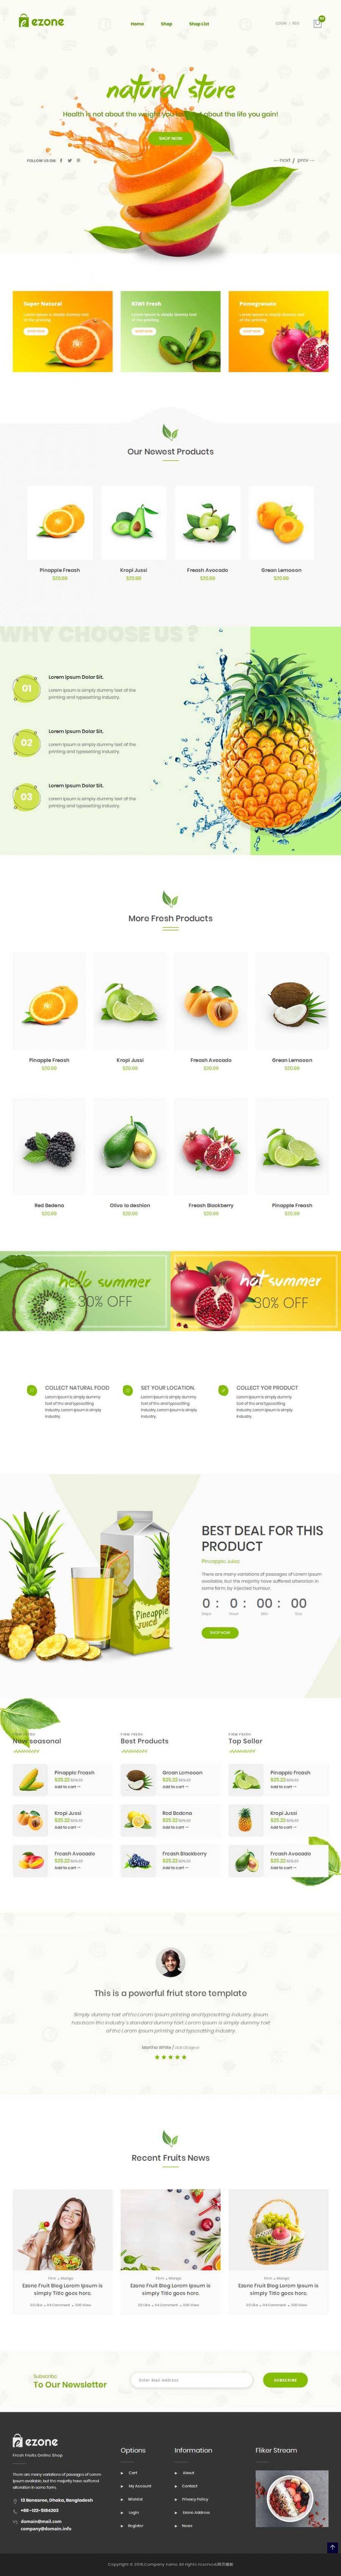 响应式HTML5水果商城在线网站模板